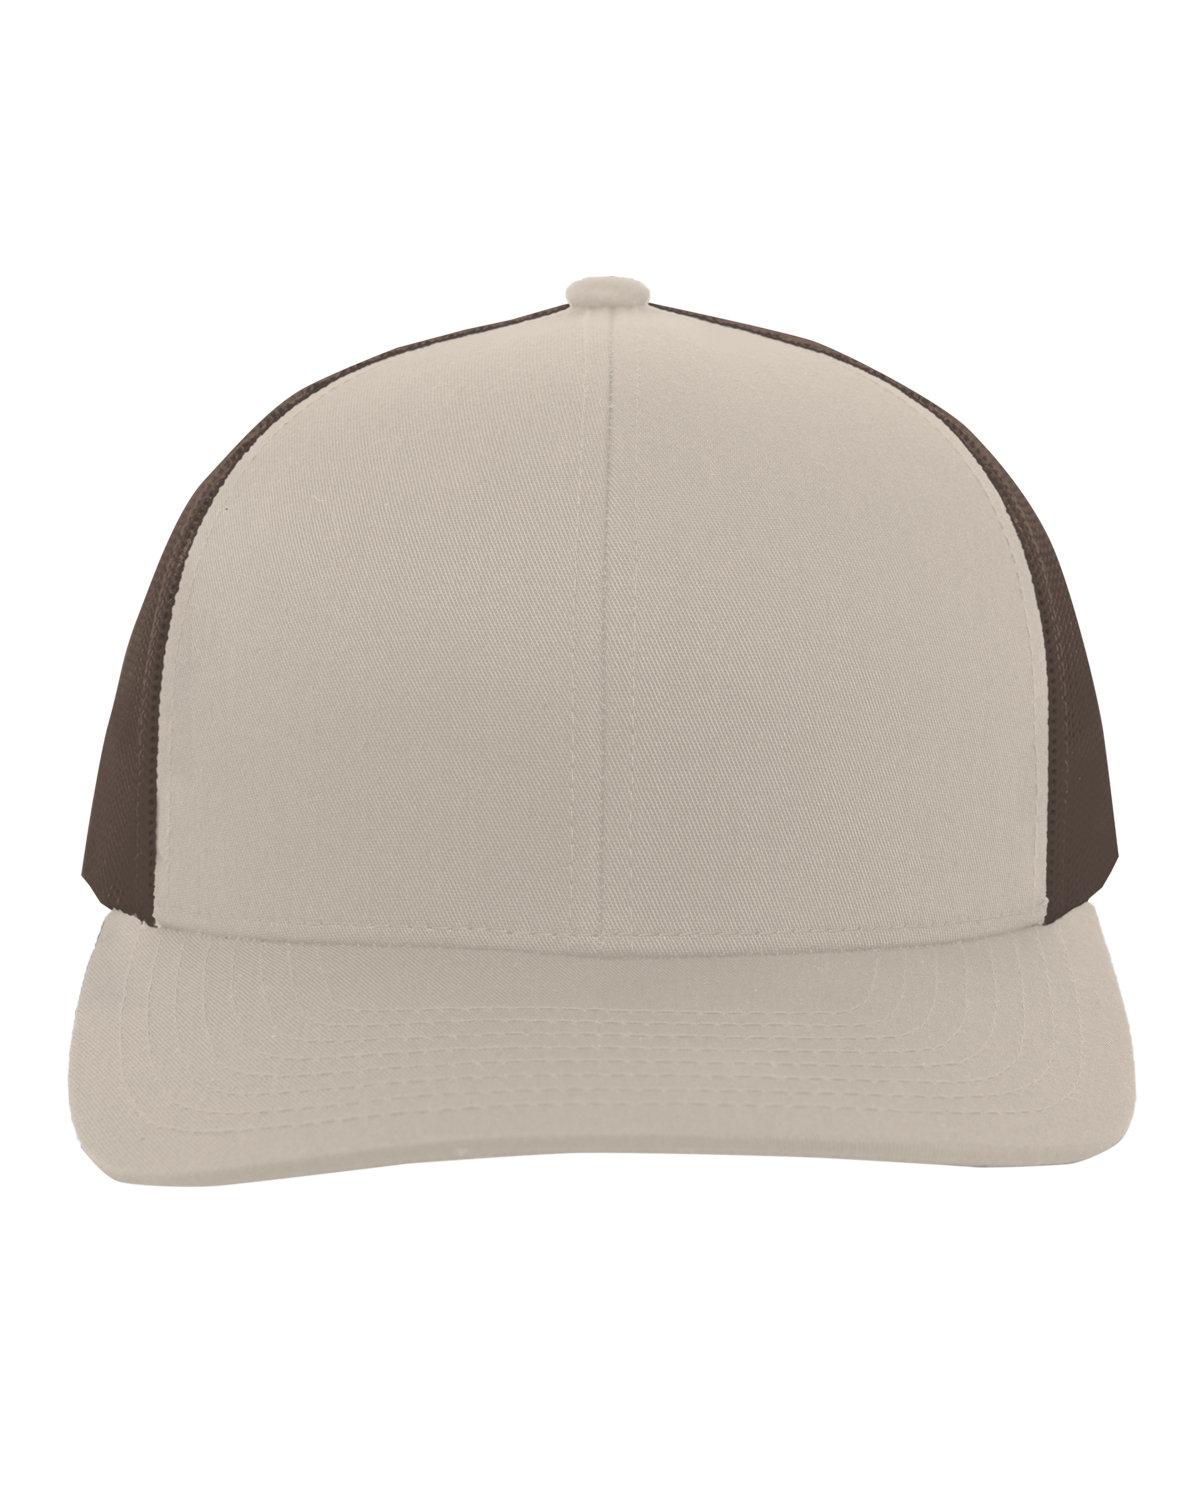 Pacific Headwear Trucker Snapback Hat KHAKI/ BROWN 